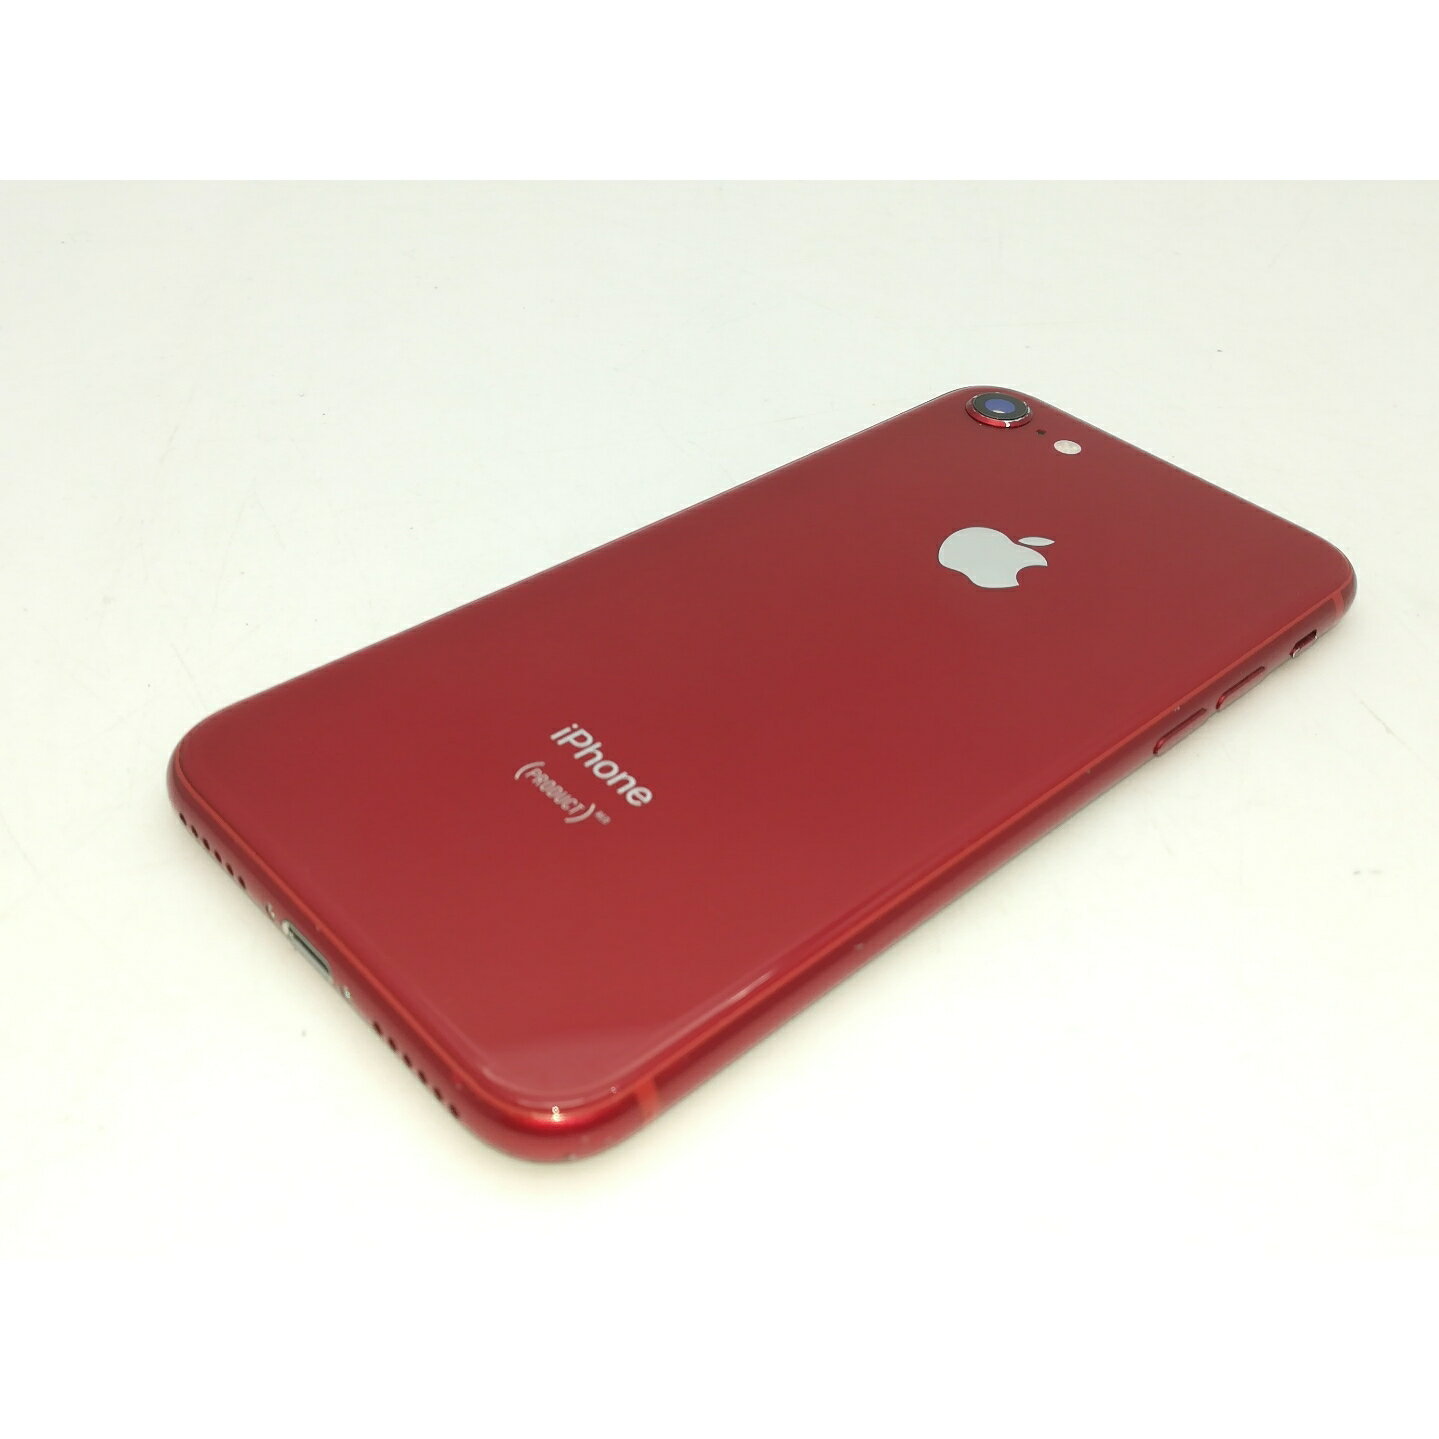 【中古】Apple au 【SIMロック解除済み】 iPhone 8 64GB PRODUCT RED Special Edition MRRY2J/A【札幌南2条】保証期間1週間【ランクC】